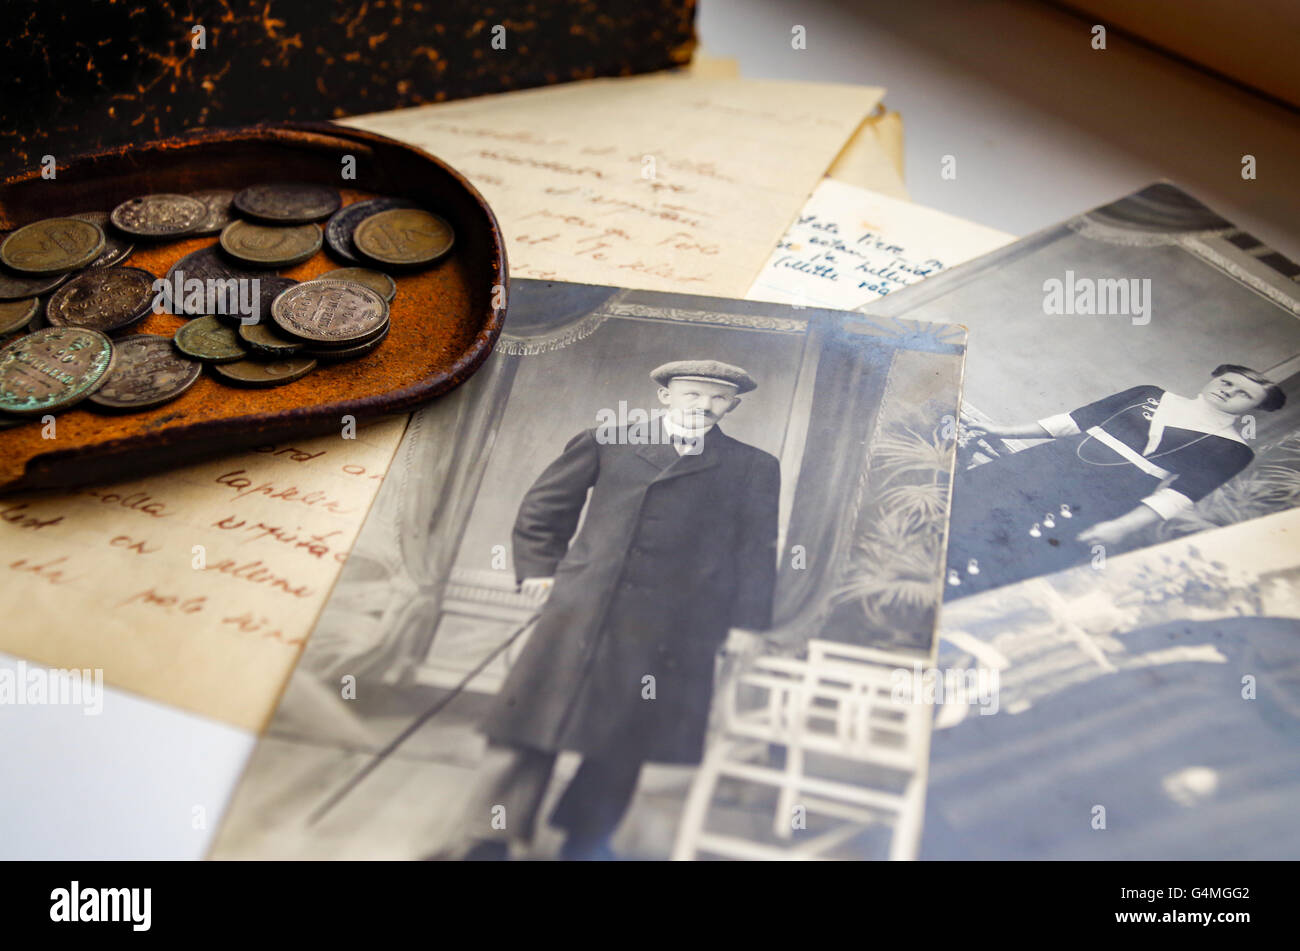 Alte b&w Fotos, eine Münze Beutel und vergilbten Liebesbriefe von 1944, gefunden auf einem Dachboden in Estland im Jahr 2016 Stockfoto